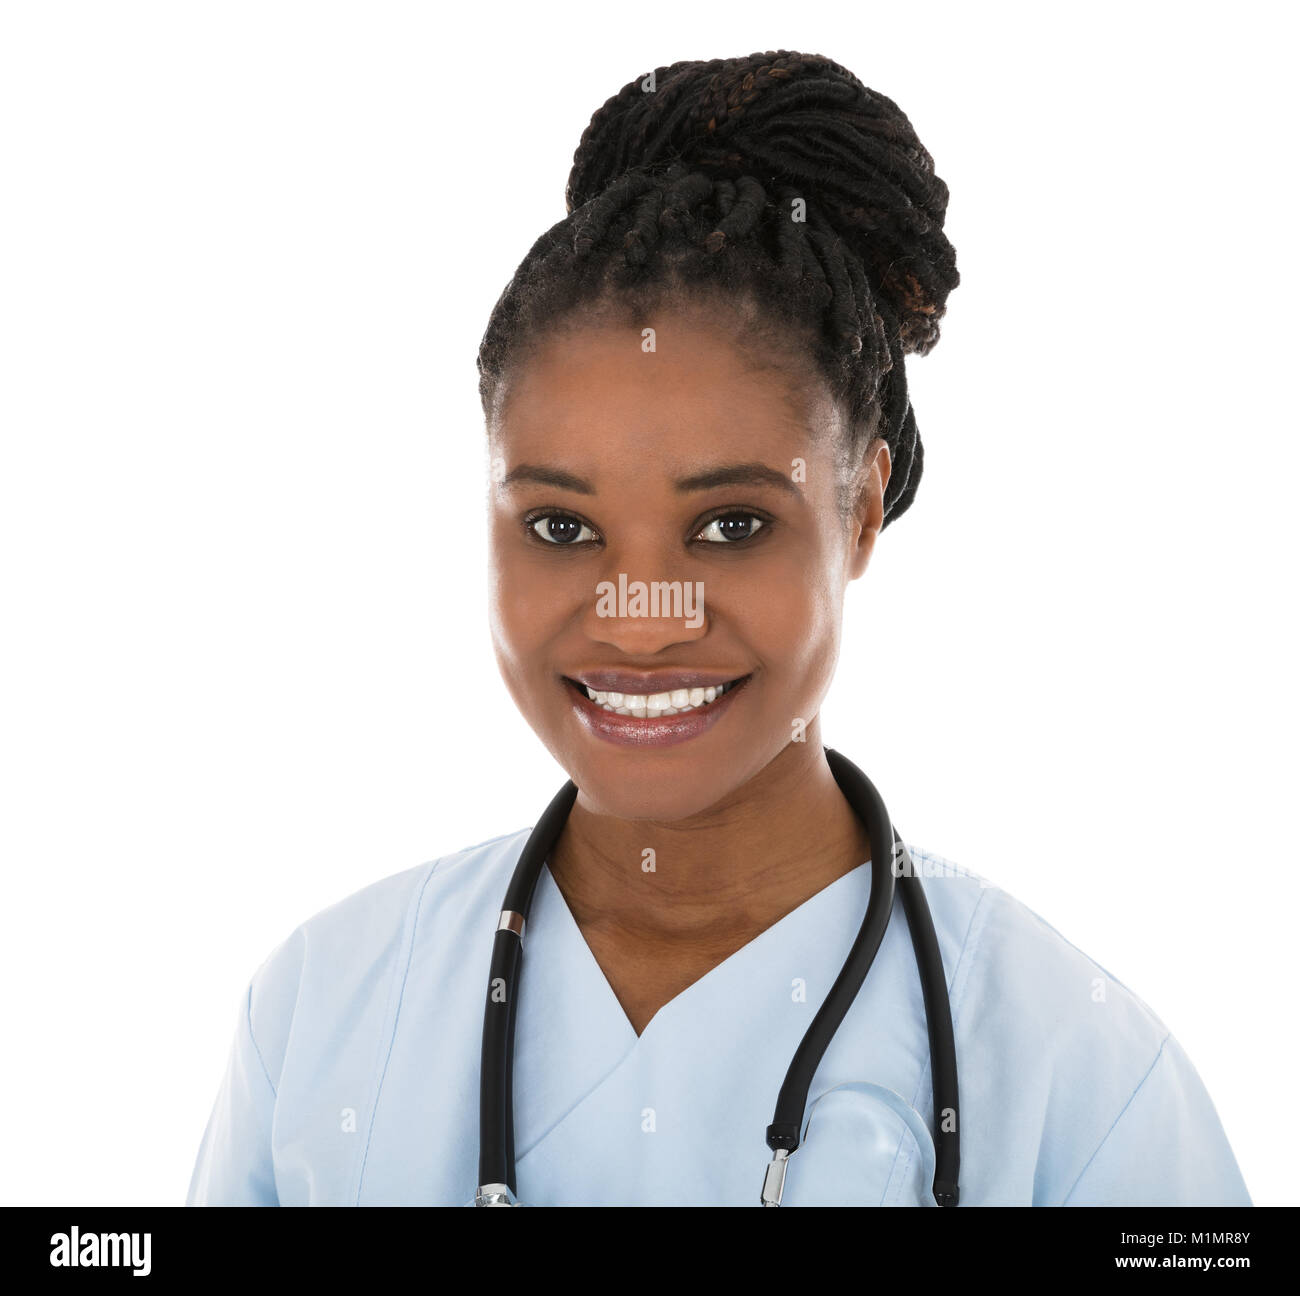 Y tá da đen là những người chăm sóc bệnh nhân với trái tim tràn đầy yêu thương và sự chuyên nghiệp. Họ là một phần quan trọng trong hệ thống chăm sóc sức khỏe của chúng ta. Hãy xem hình ảnh liên quan để cảm nhận được sự chu đáo và tâm huyết của các y tá da đen.